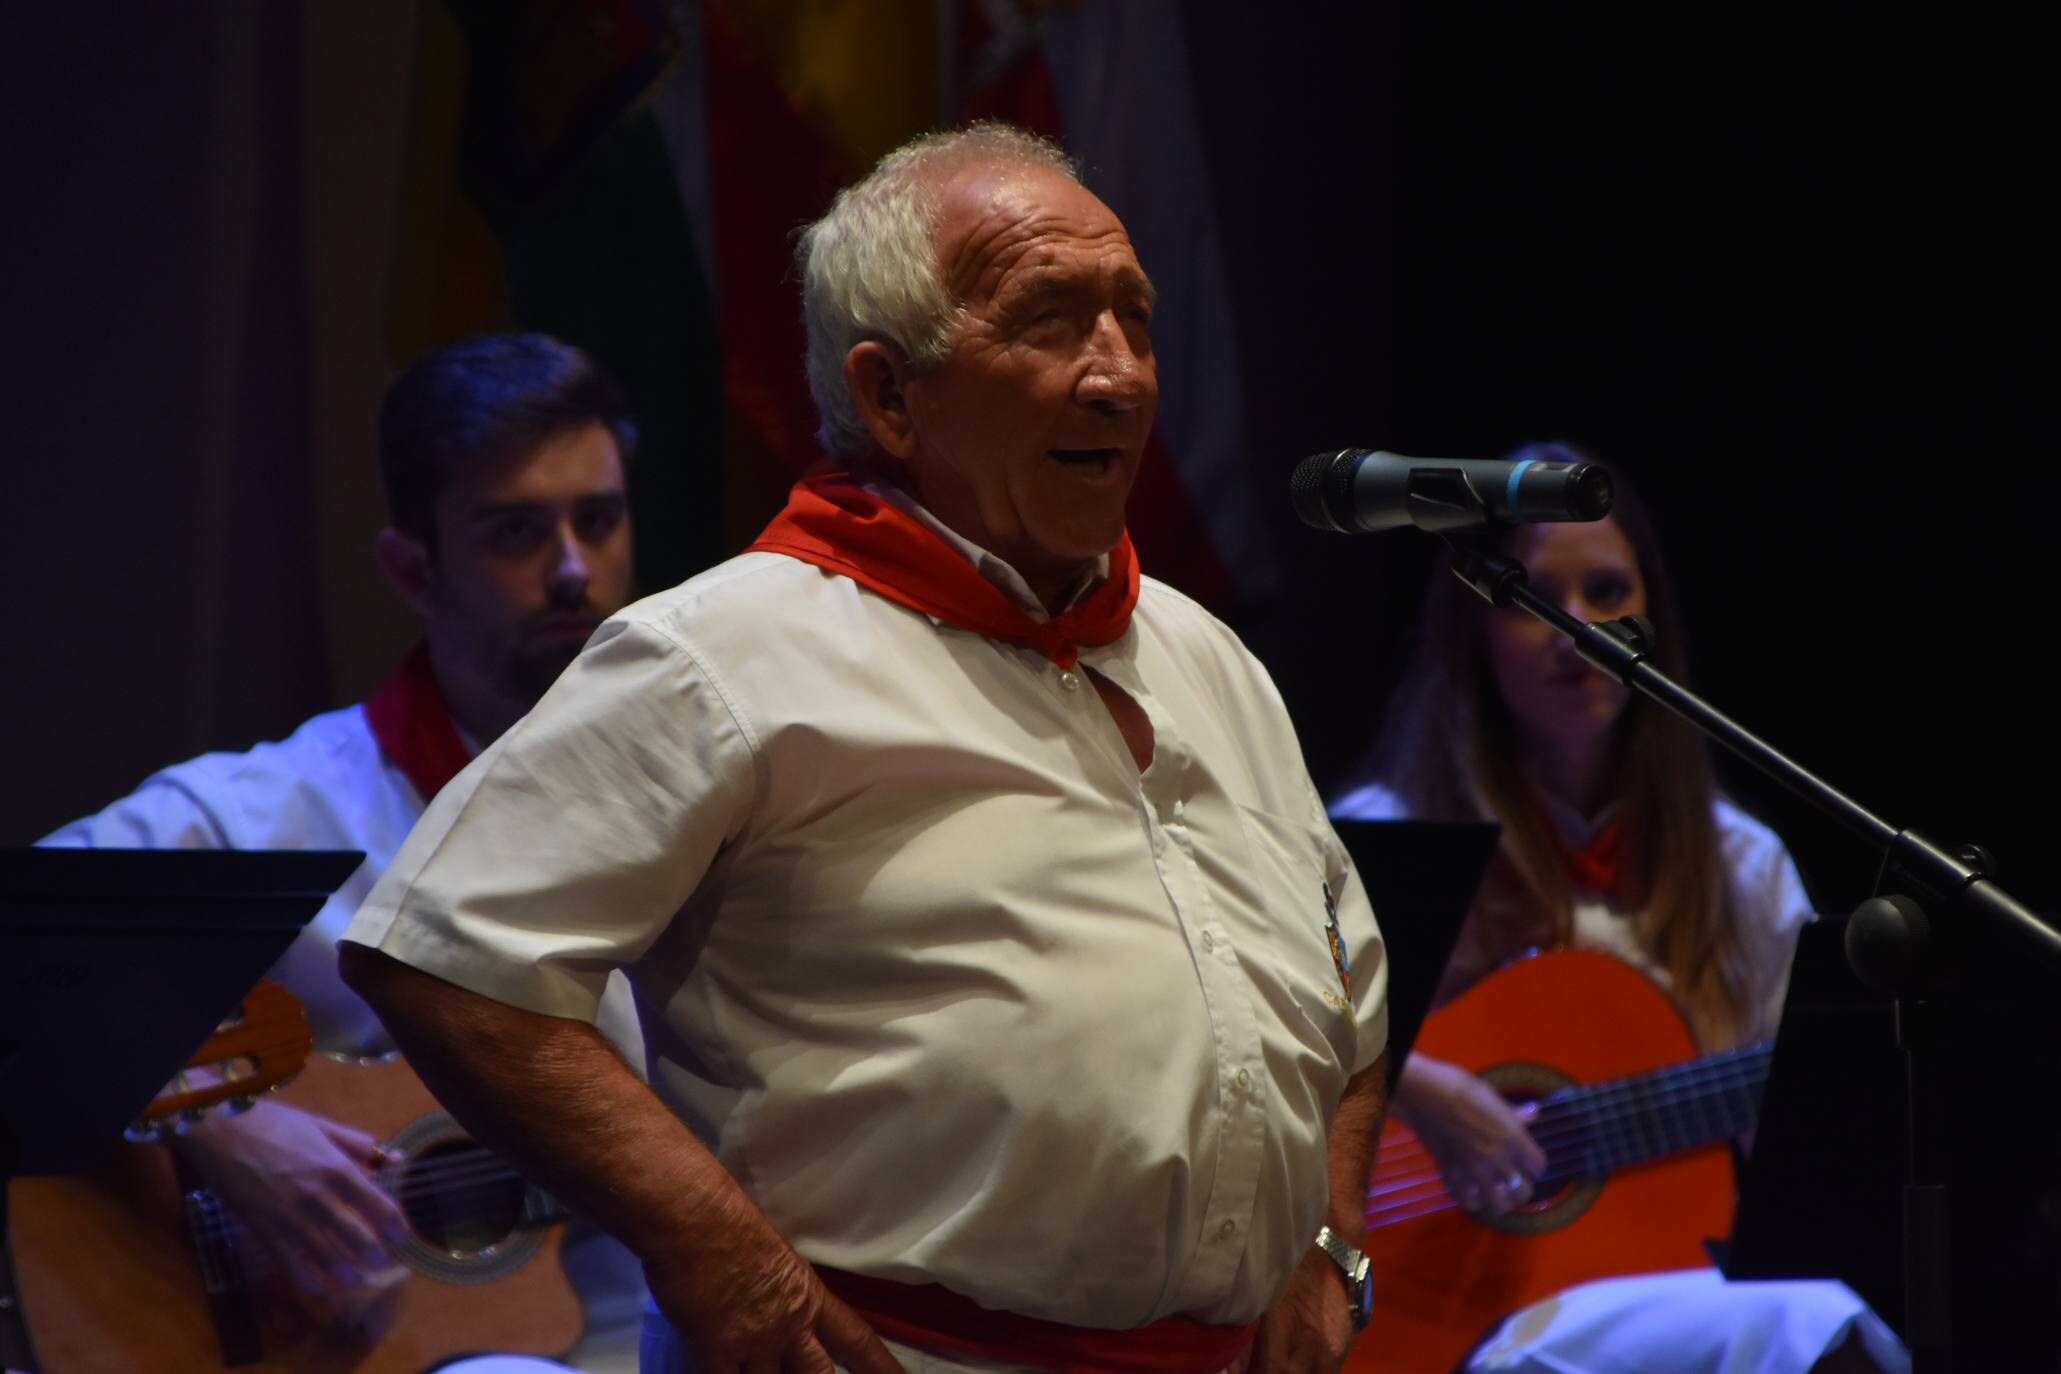 Los joteros veteranos cantan en el festival de Calahorra